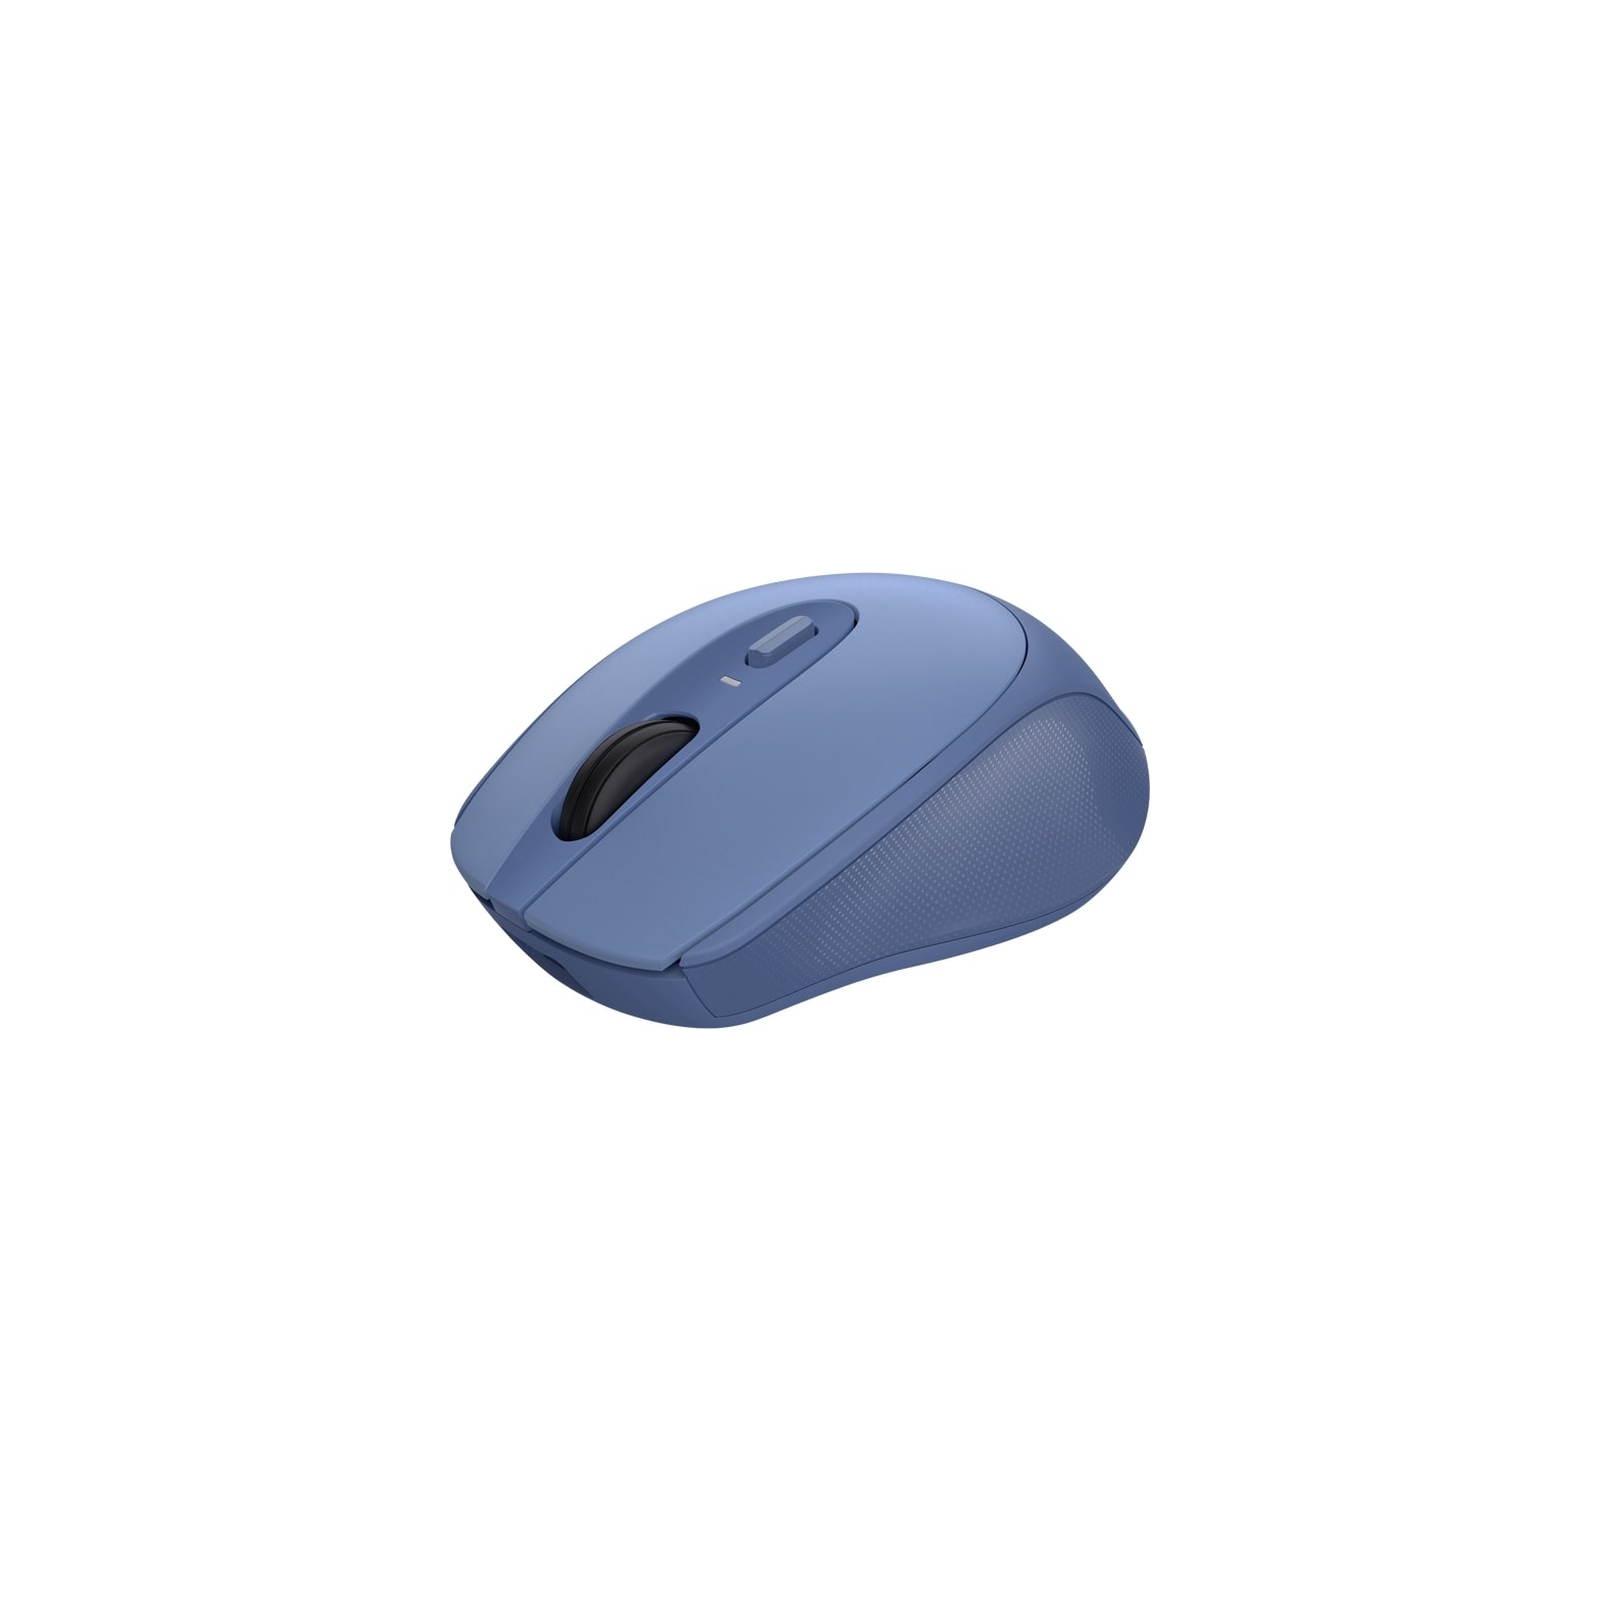 Мышка Trust Zaya Rechargeable Wireless Blue (25039)